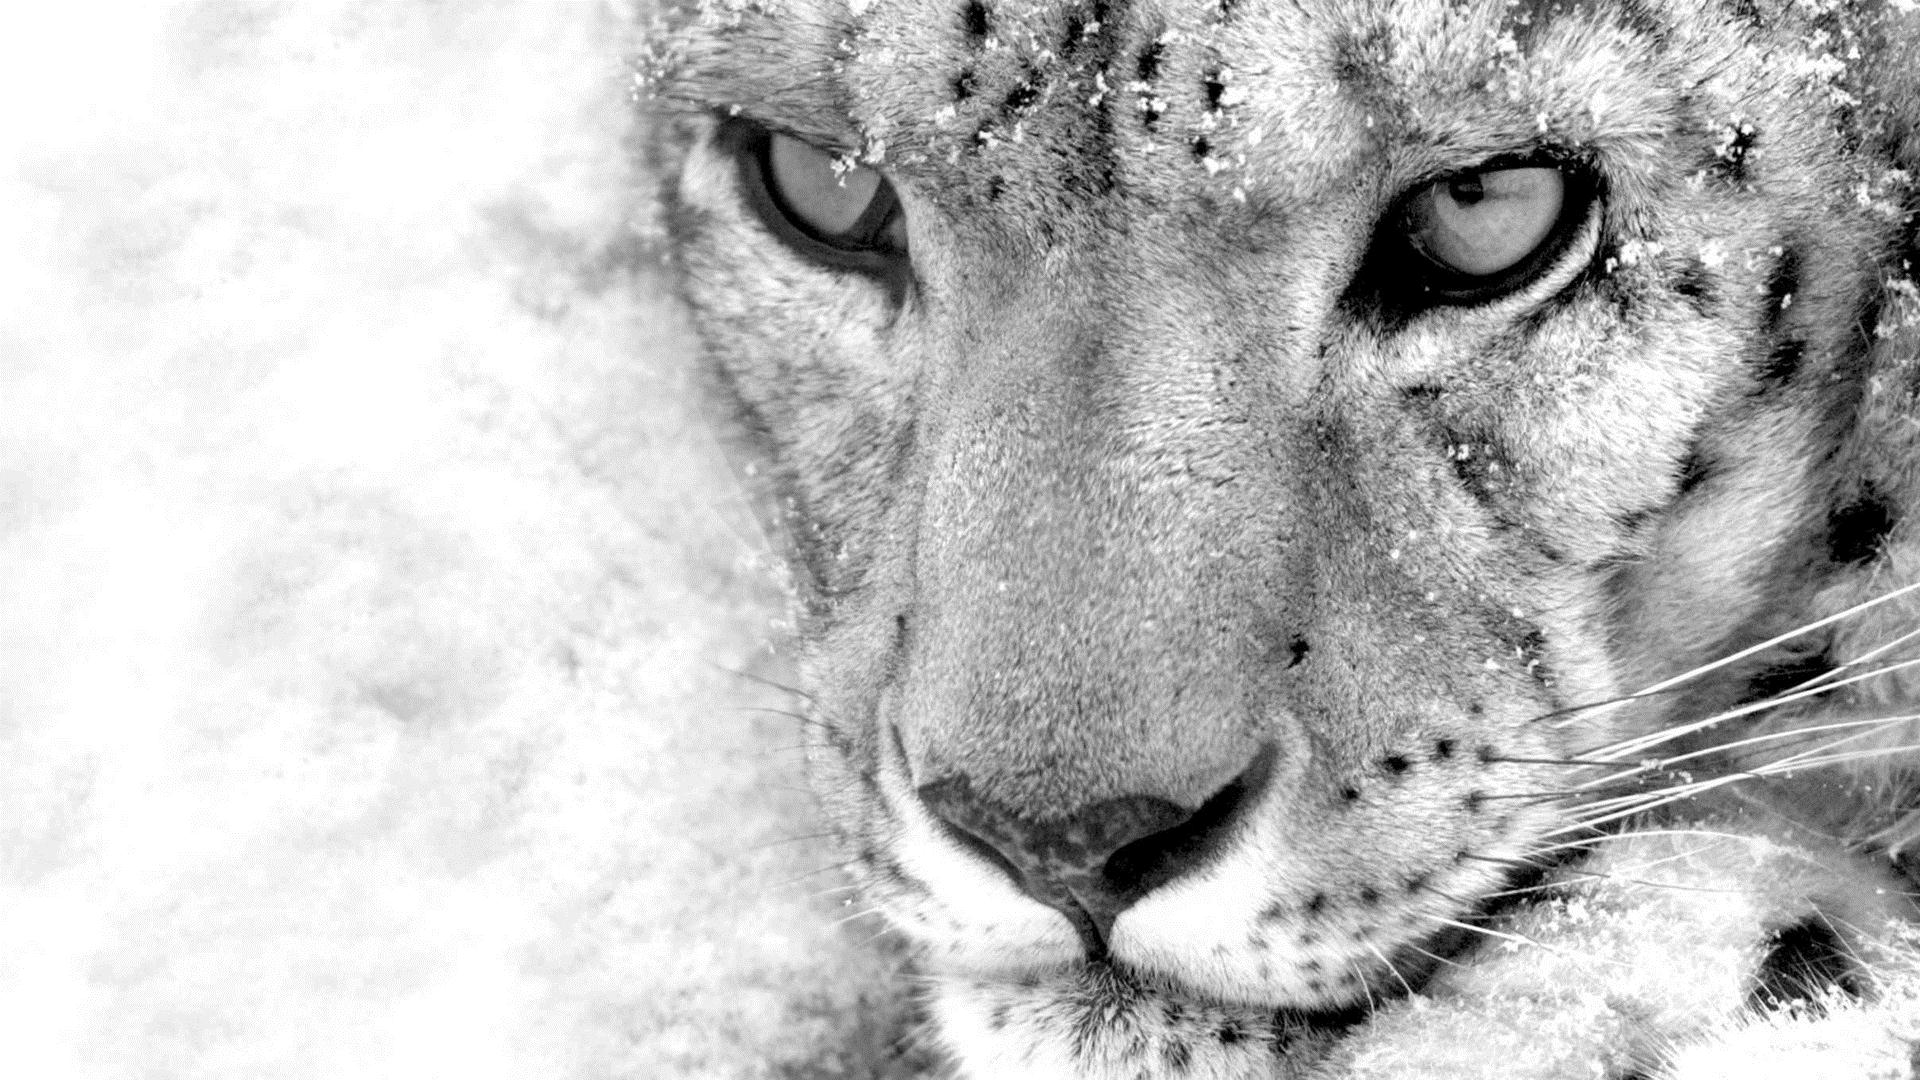 Snow Leopard Wallpaper HD Picture Image For Dekstop Backgrou 53127